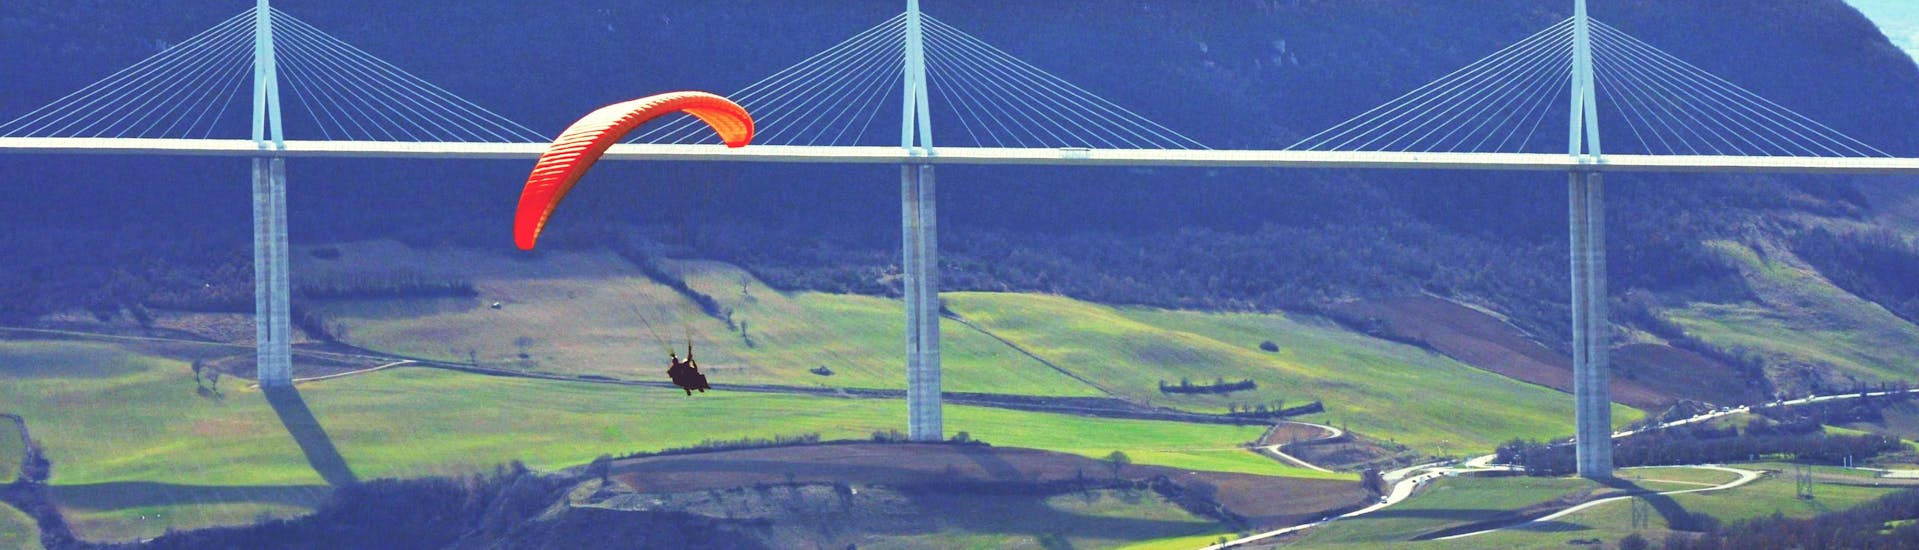 Panorama Tandem Paragliding in Millau (vanaf 4 j.) - Grands Causses (regionaal natuurpark).